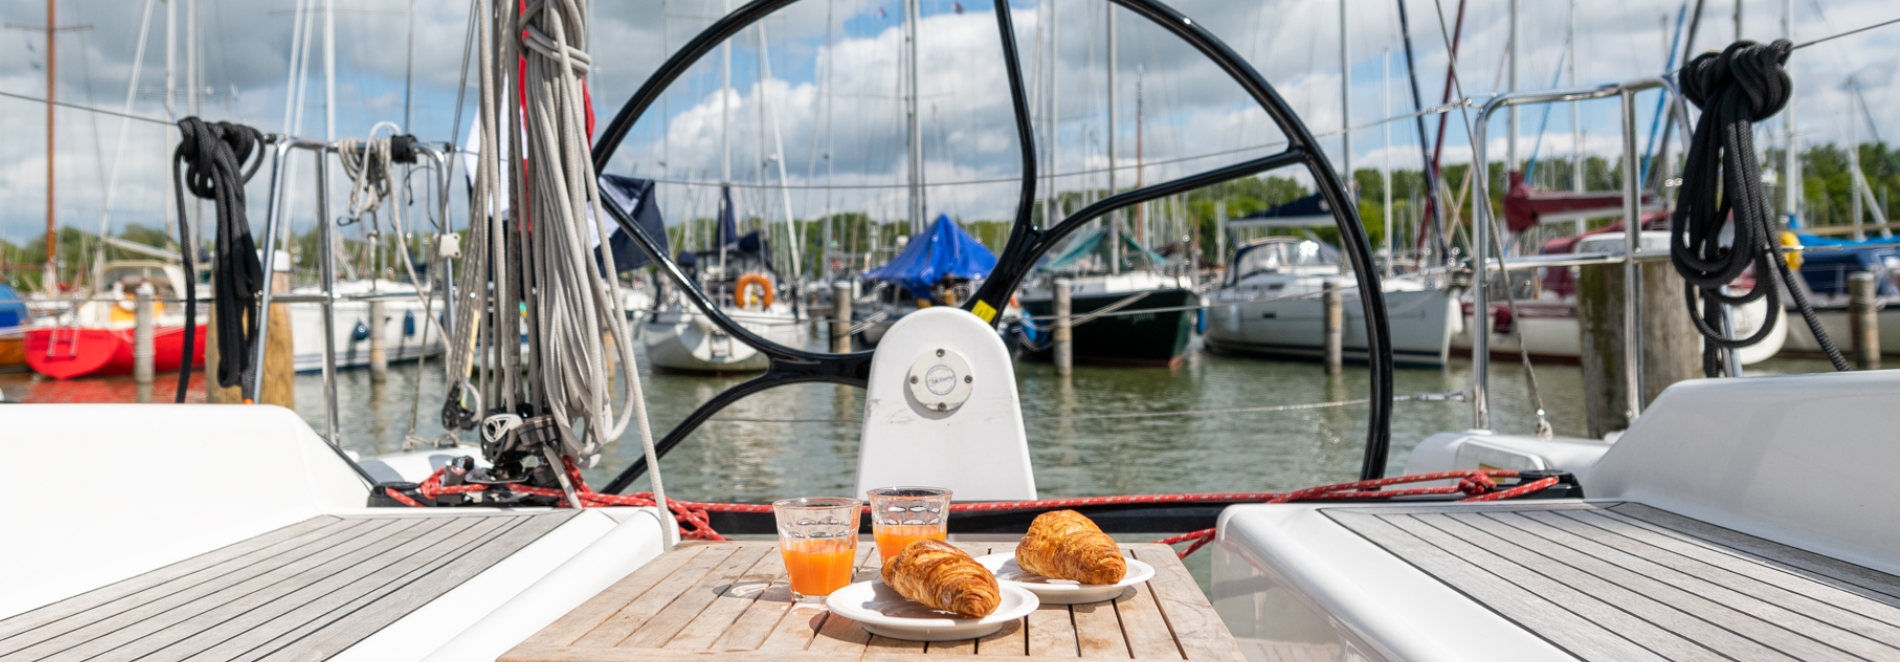 waterland breakfast on a boat